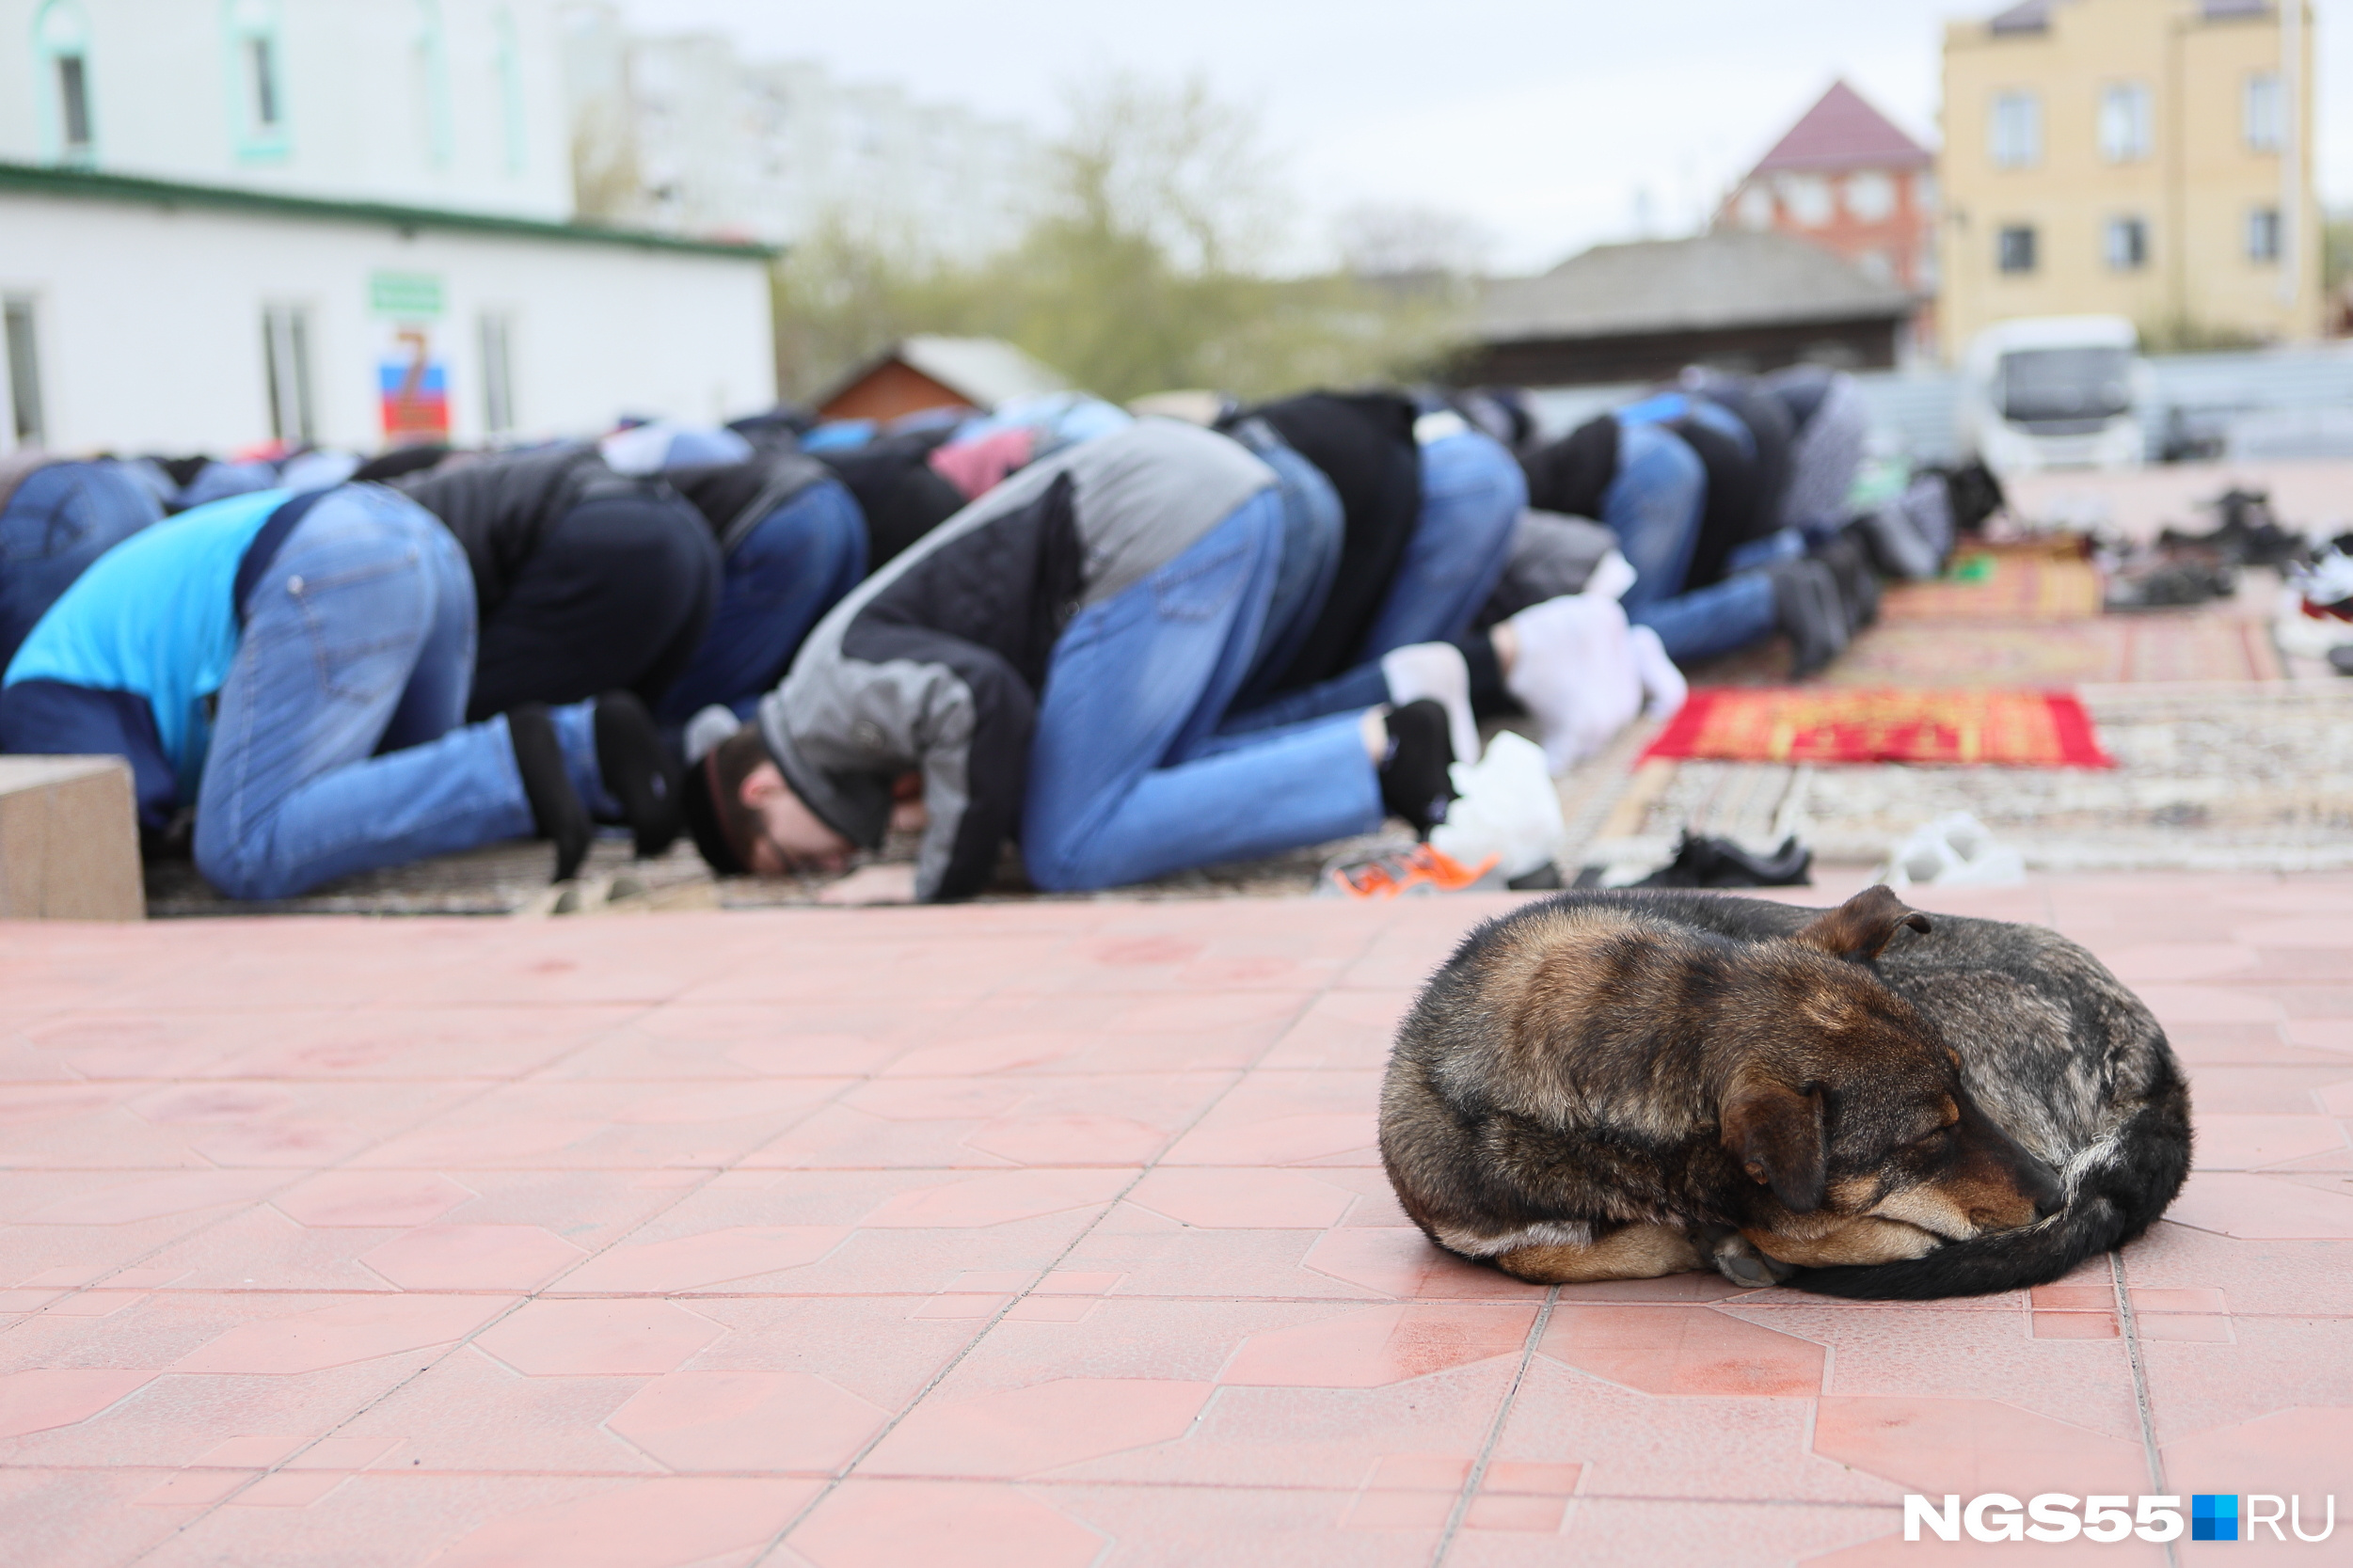 Здание мечети не смогло вместить всех желающих, и люди молились прямо на улице. Тем временем неподалеку мирно дремал бездомный пес